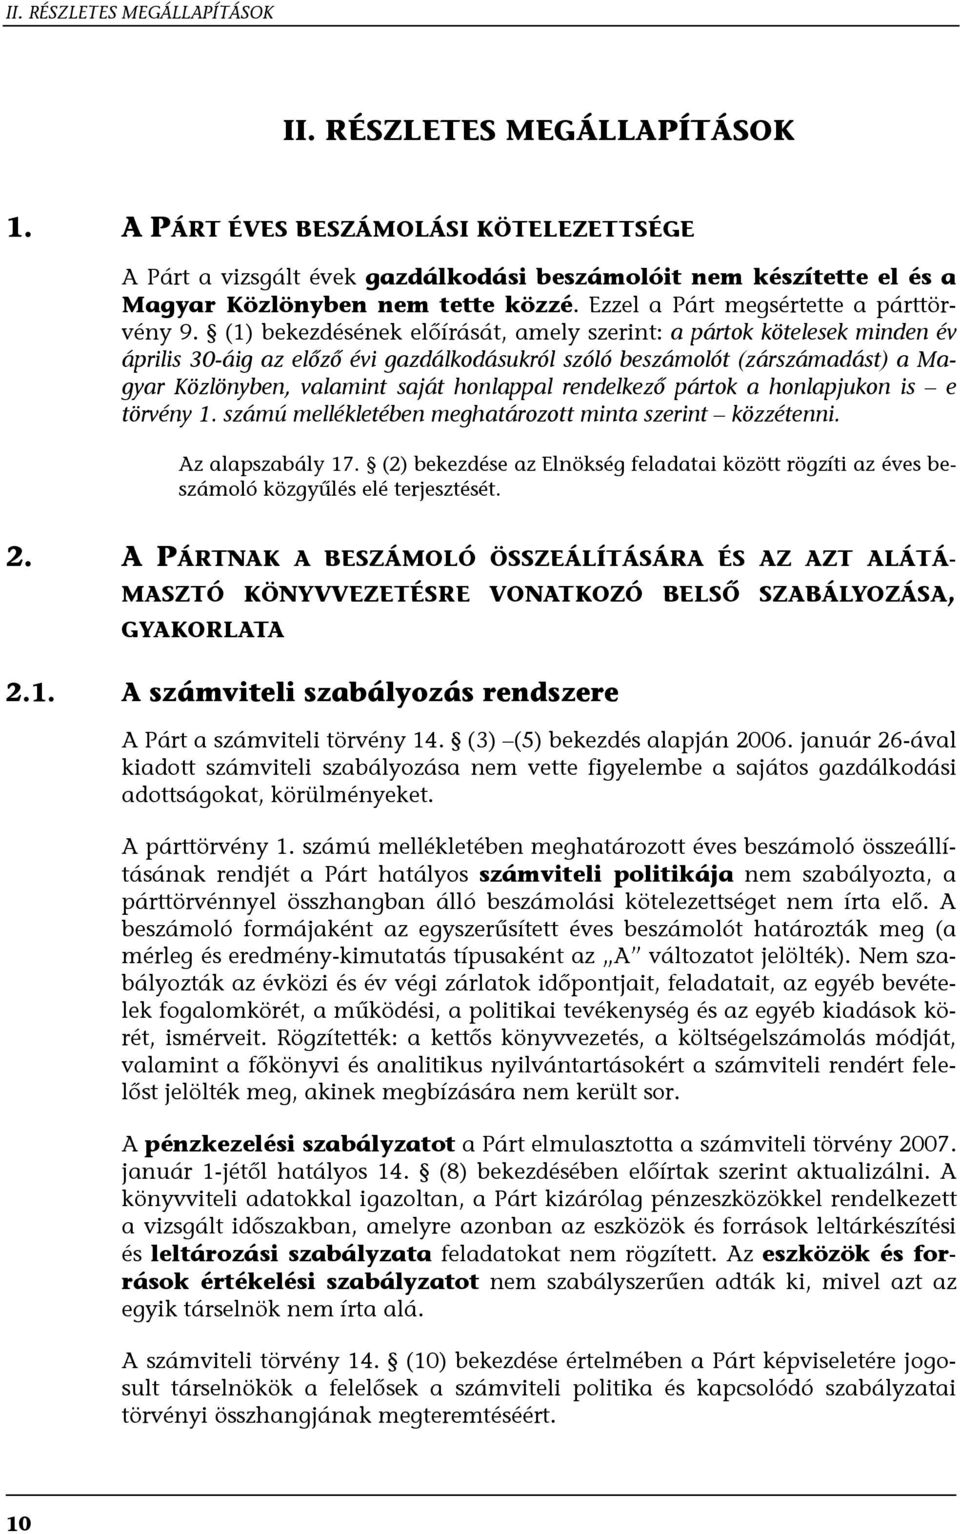 (1) bekezdésének előírását, amely szerint: a pártok kötelesek minden év április 30-áig az előző évi gazdálkodásukról szóló beszámolót (zárszámadást) a Magyar Közlönyben, valamint saját honlappal